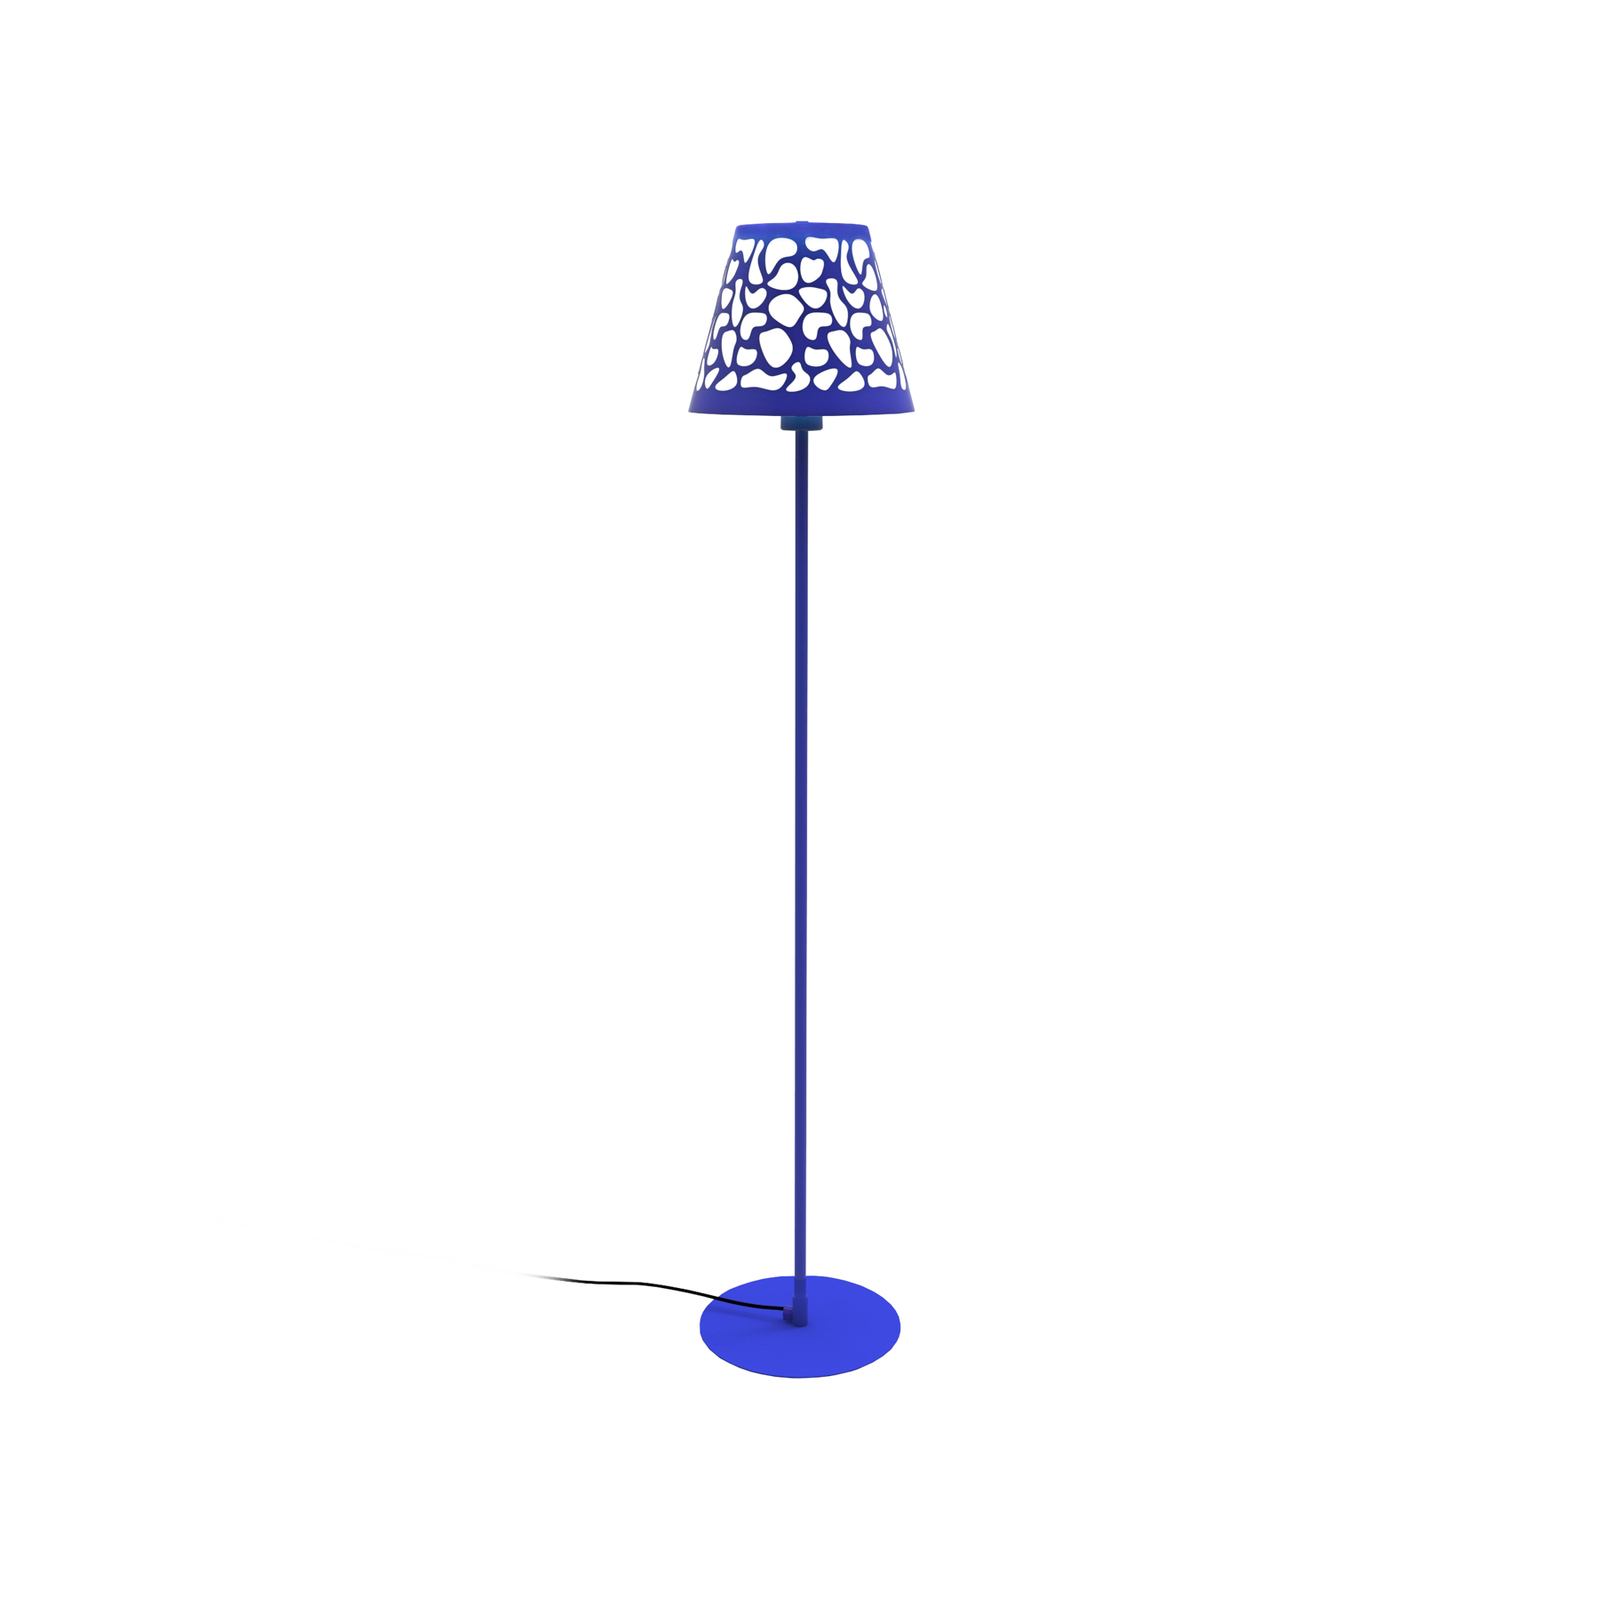 Aluminor Nihoa gulvlampe med hulmønster, blå/hvid